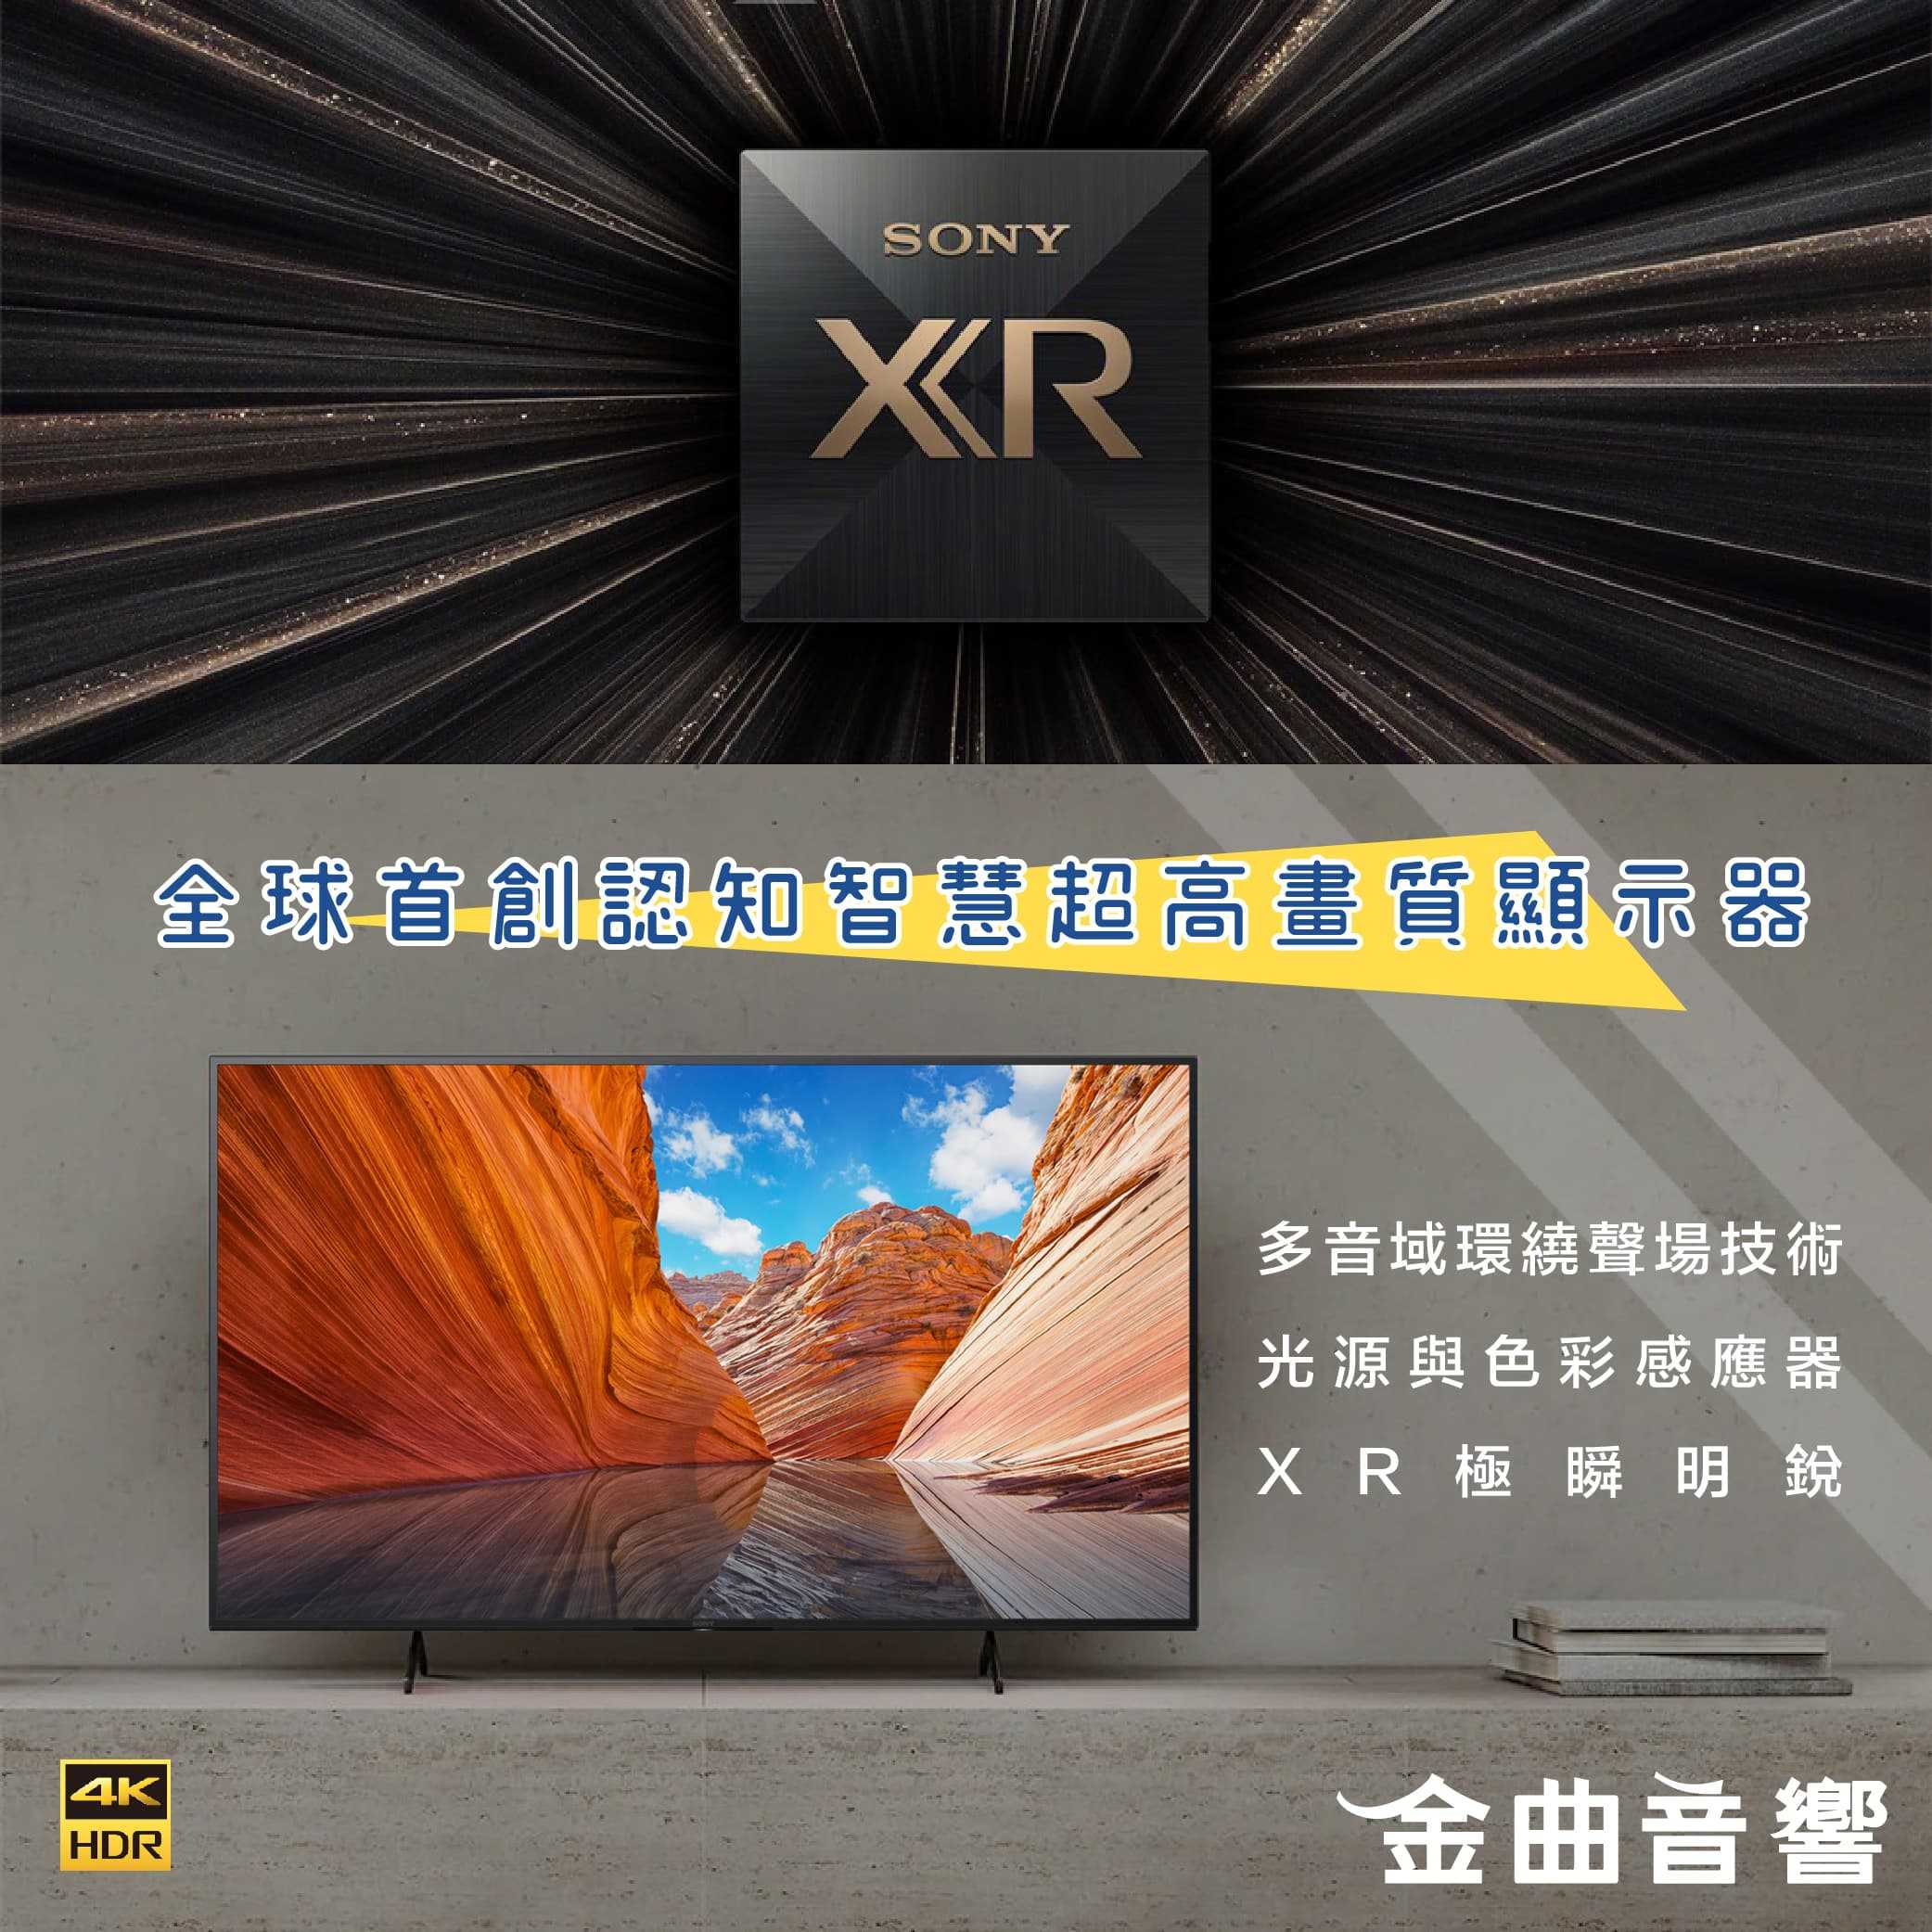 SONY 索尼 55吋 KM-55X85J 4K HDR HDMI 2.1 液晶 電視 2021 | 金曲音響